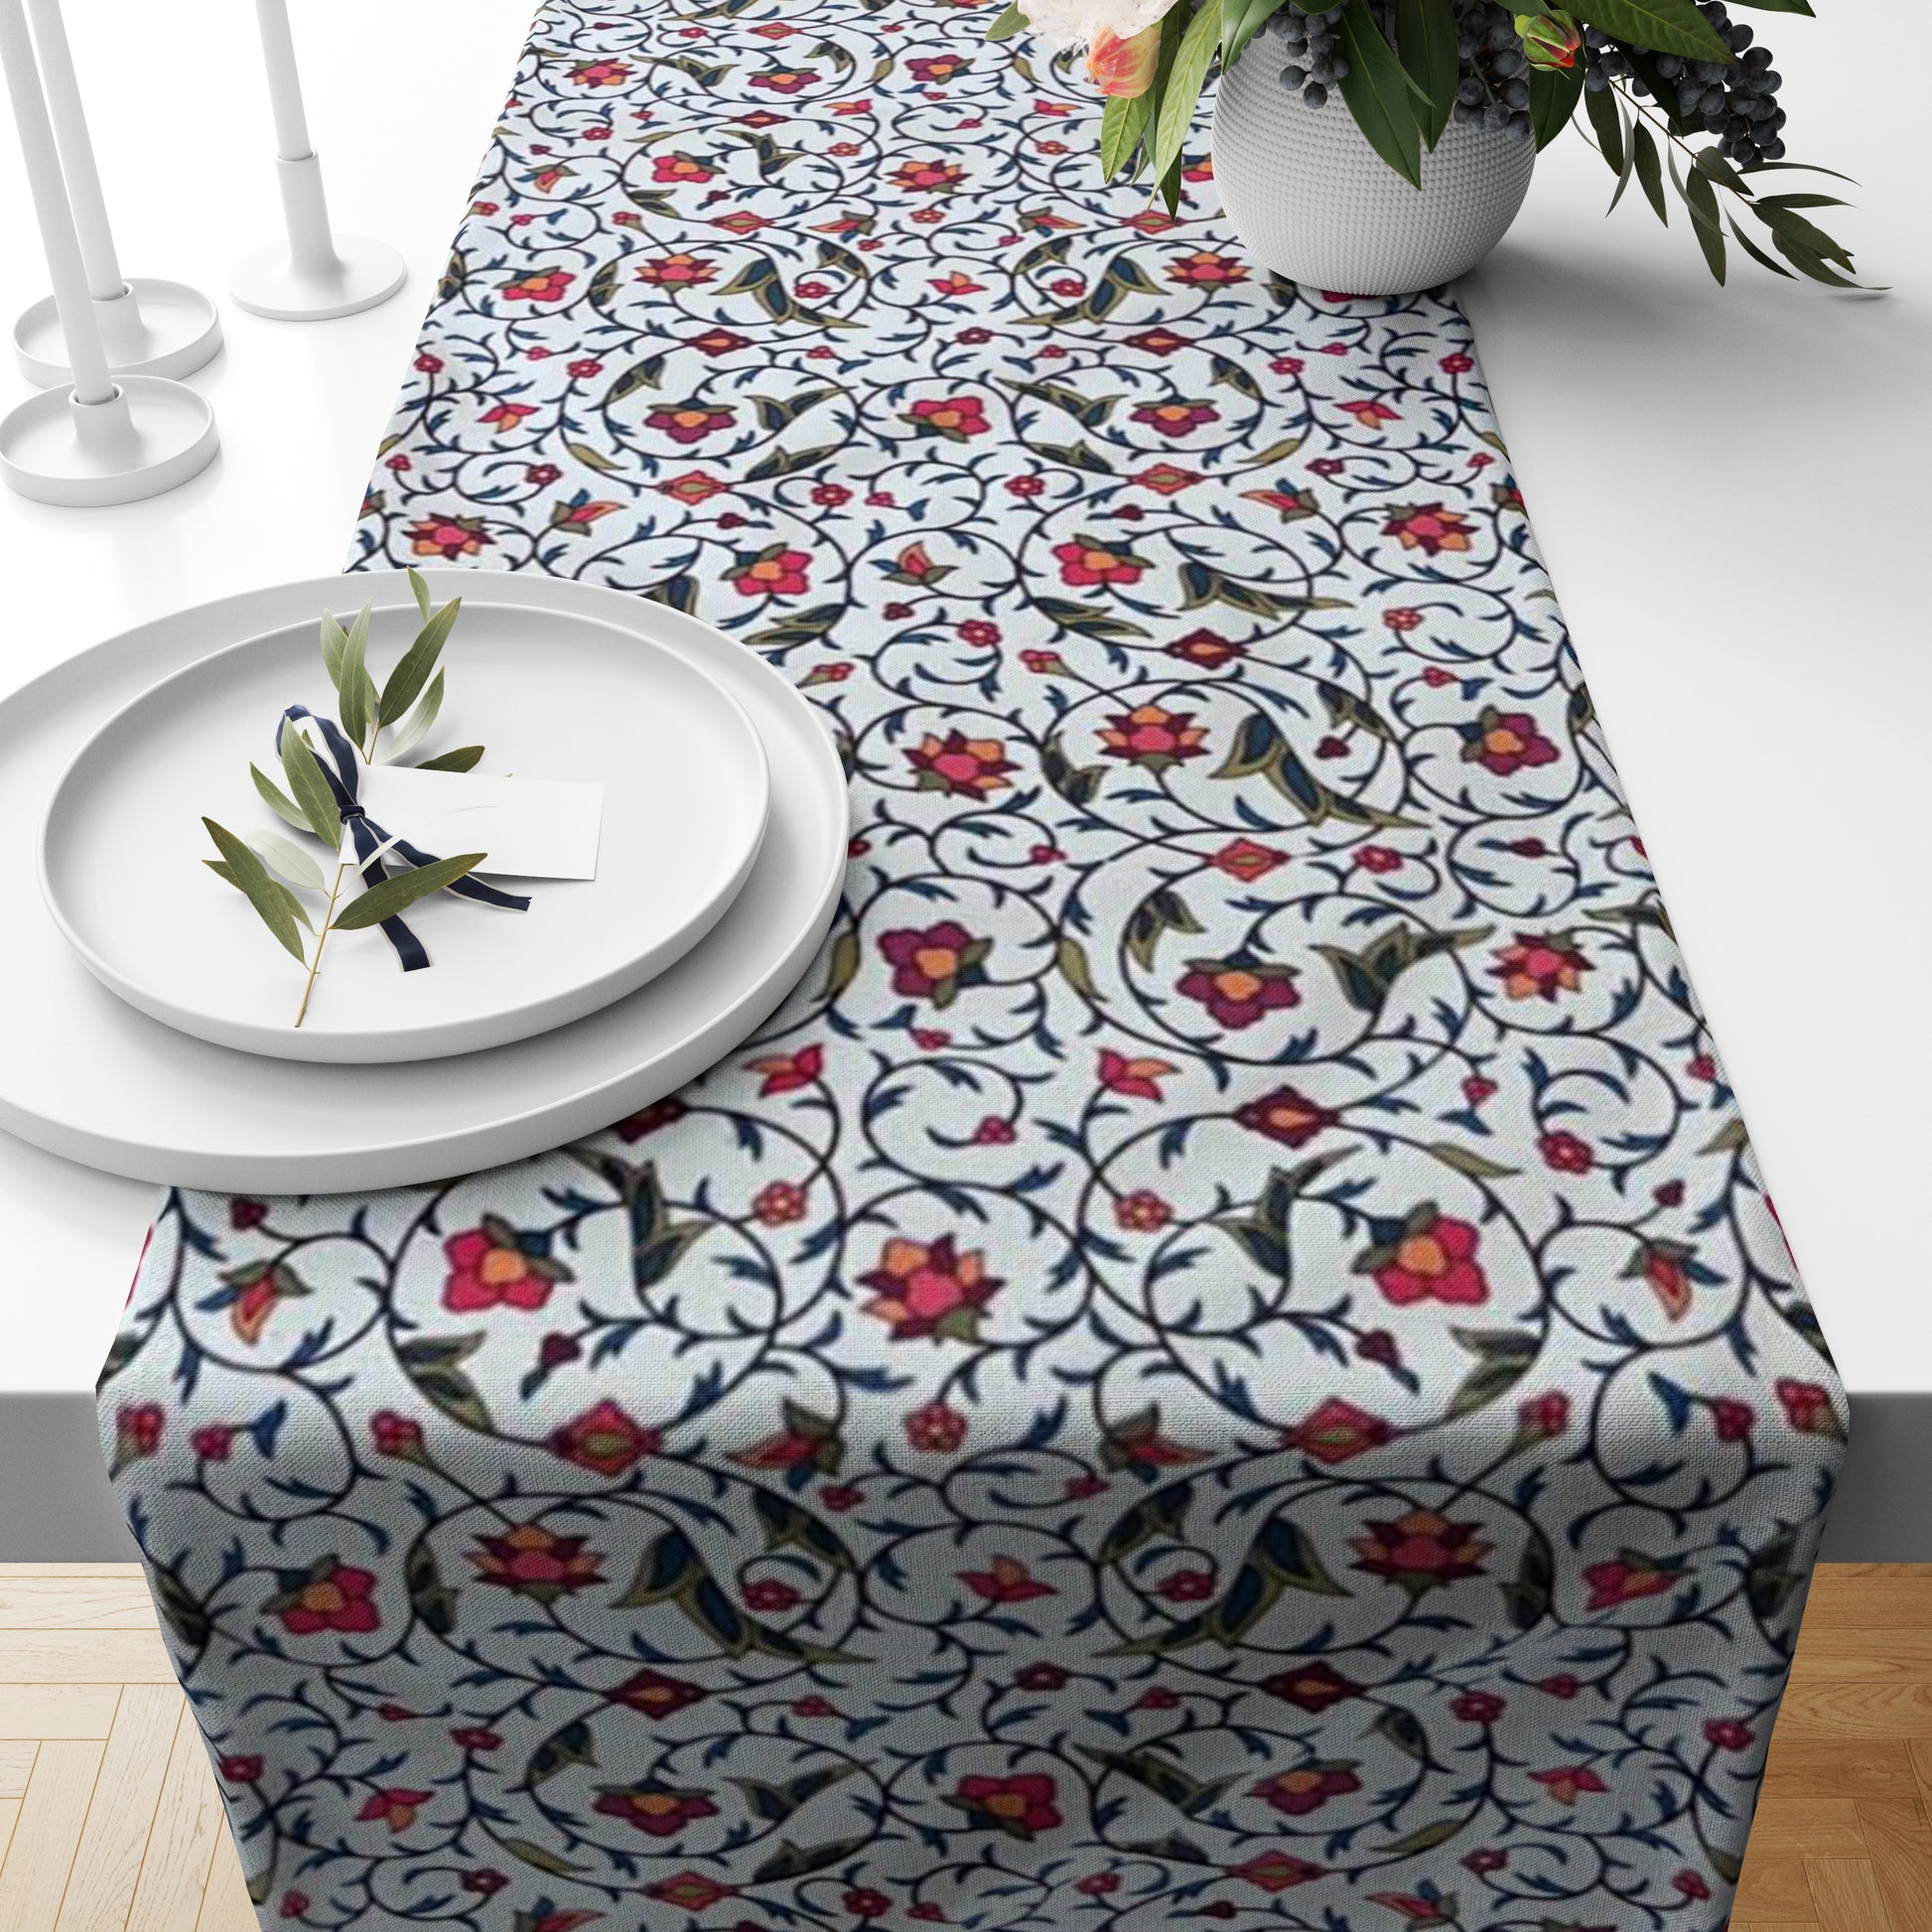 Indie floral Table Runner